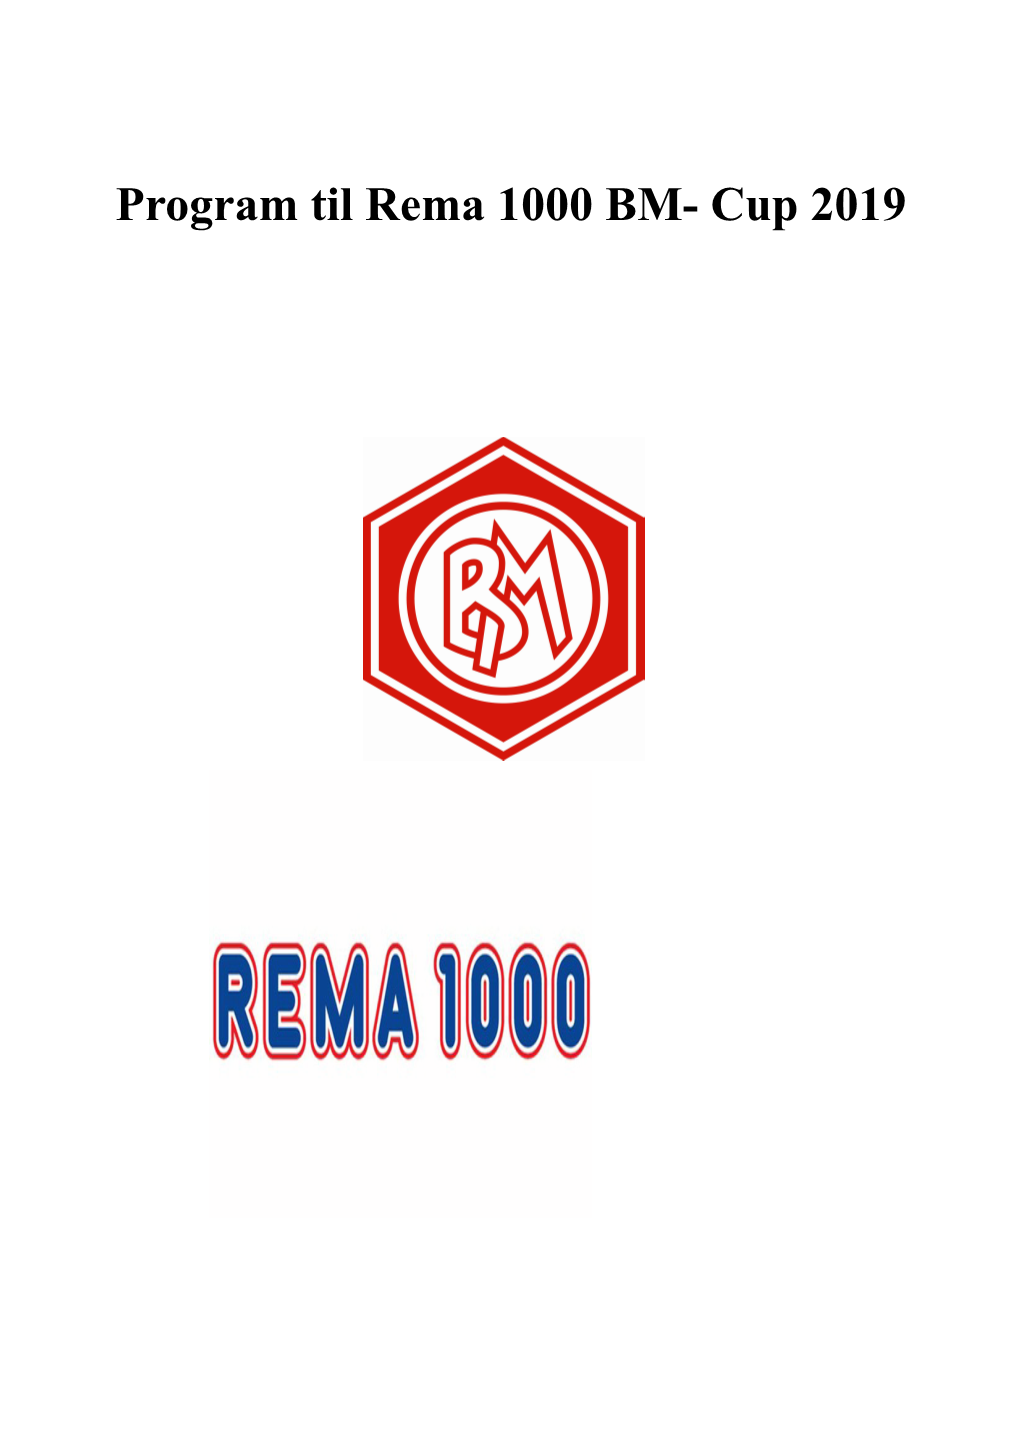 Program Til Rema 1000 BM- Cup 2019